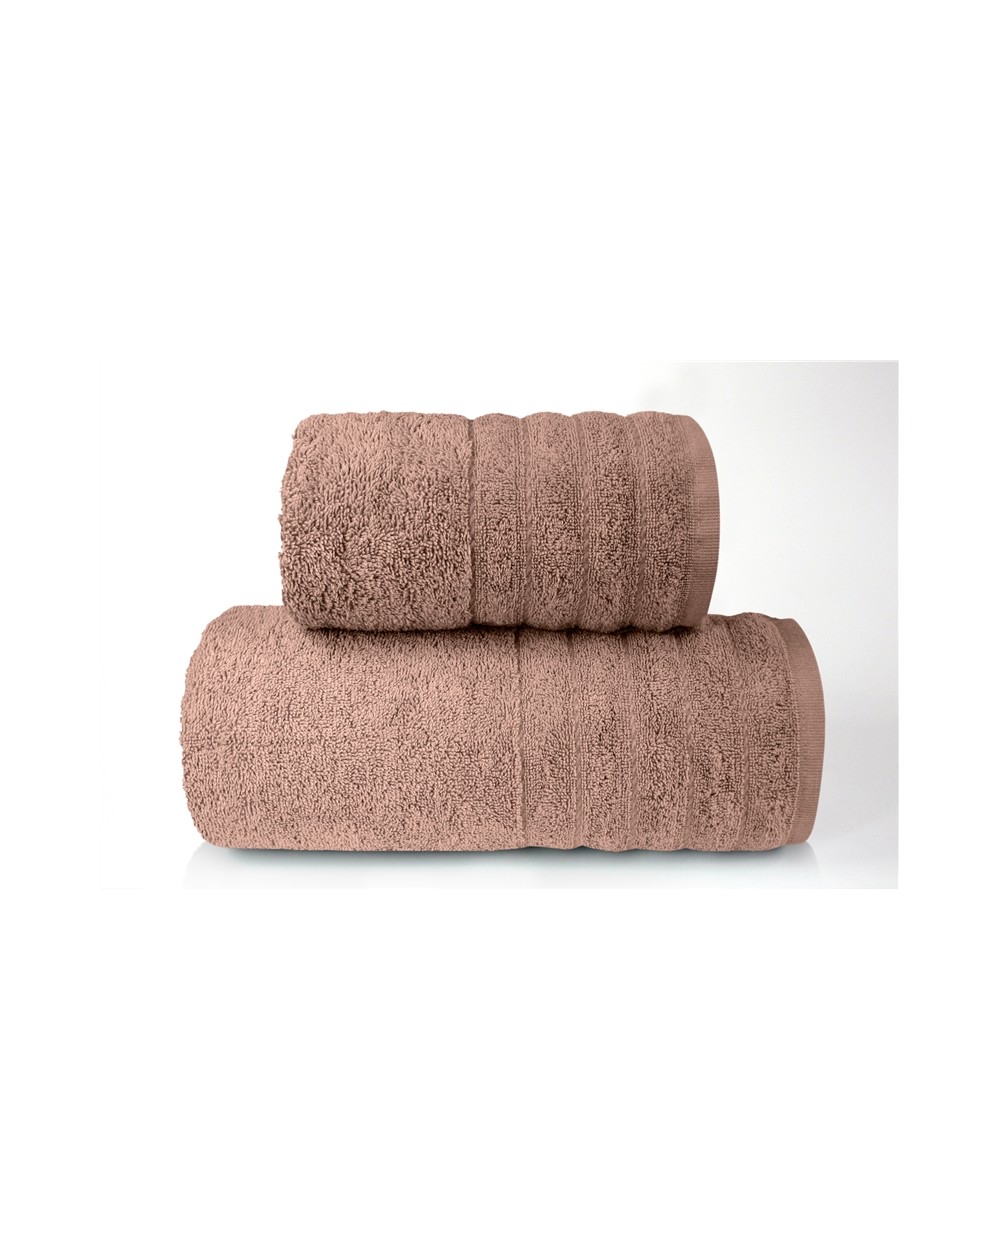 Ręcznik bawełna 50x90 Alexa brązowy Greno